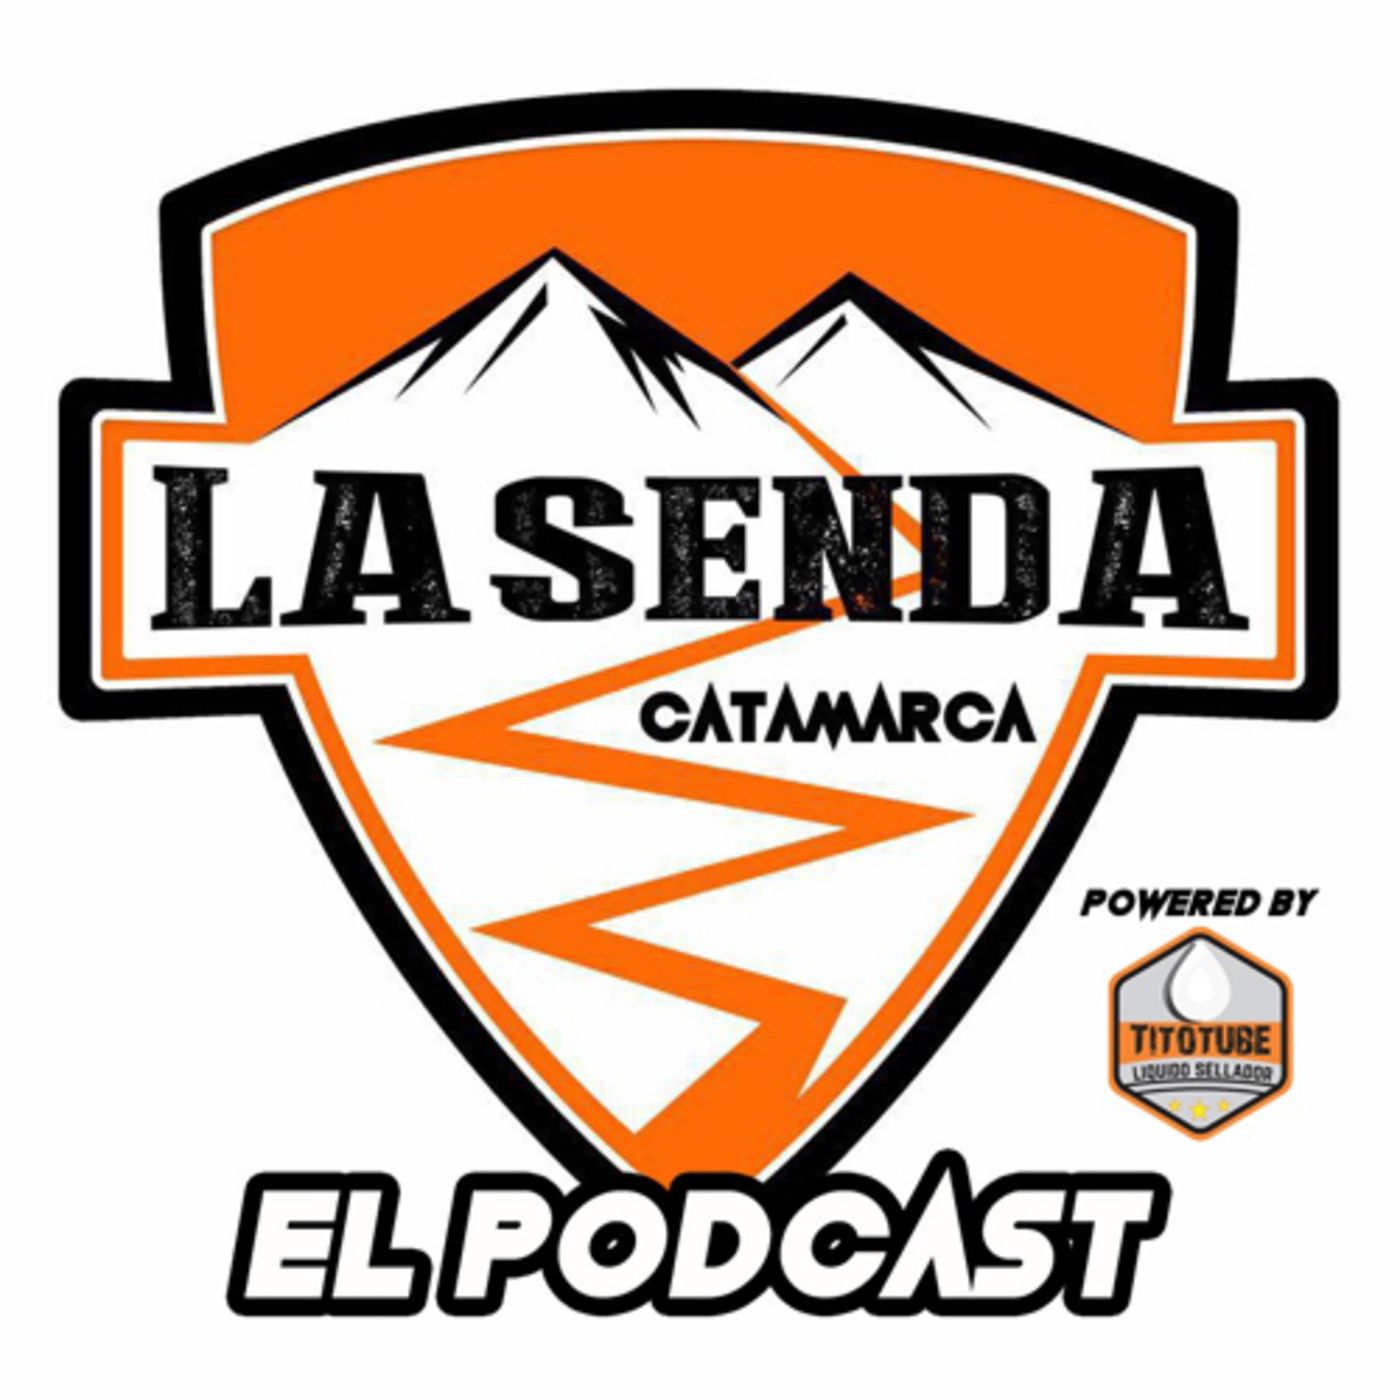 El Podcast de La Senda